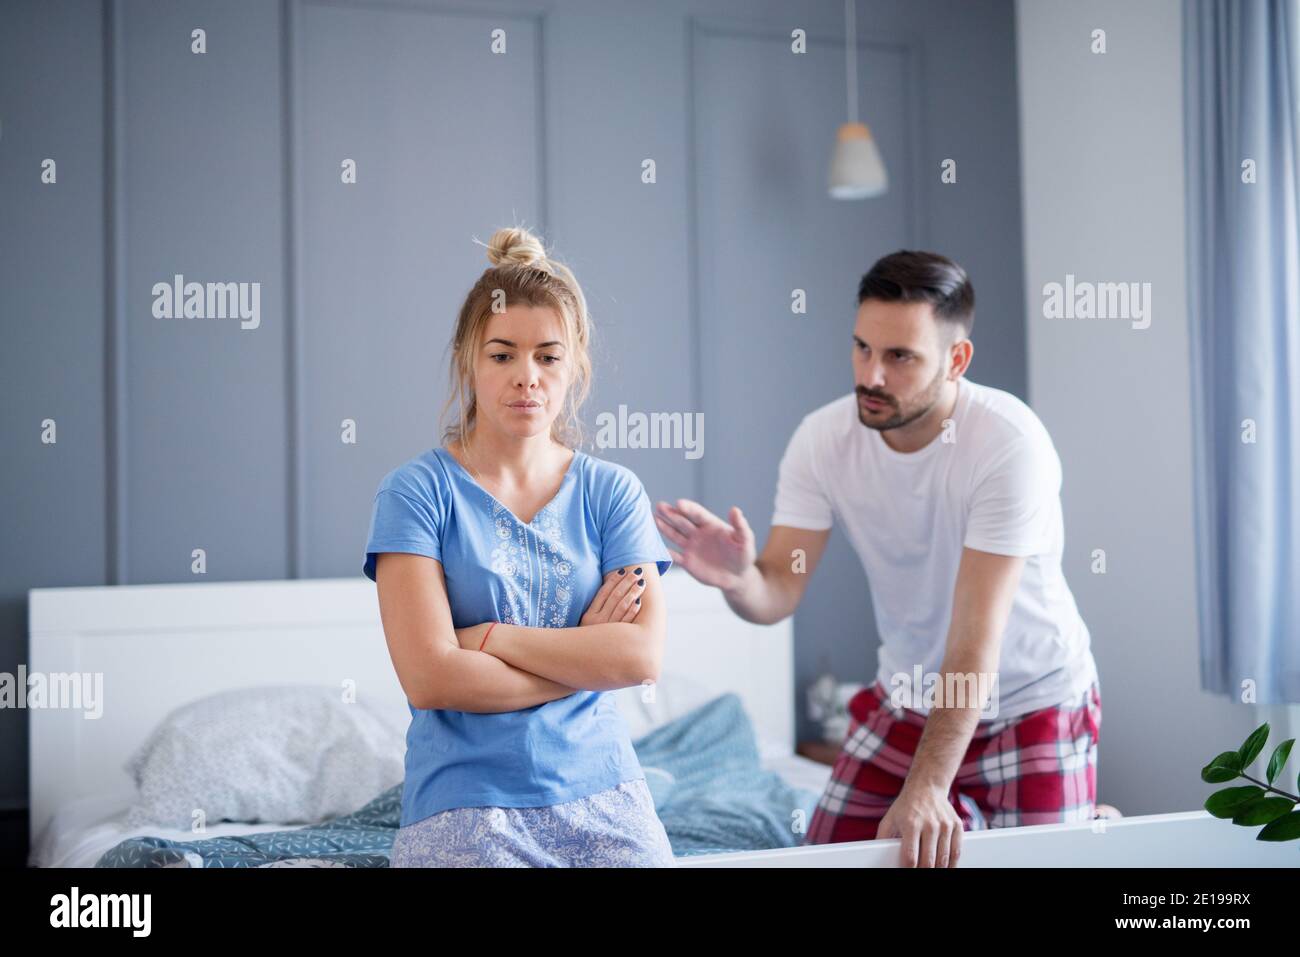 Besorgt und traurig junge Frau sitzt am Rand des Bettes und hört ihrem Mann reden über Probleme. Stockfoto